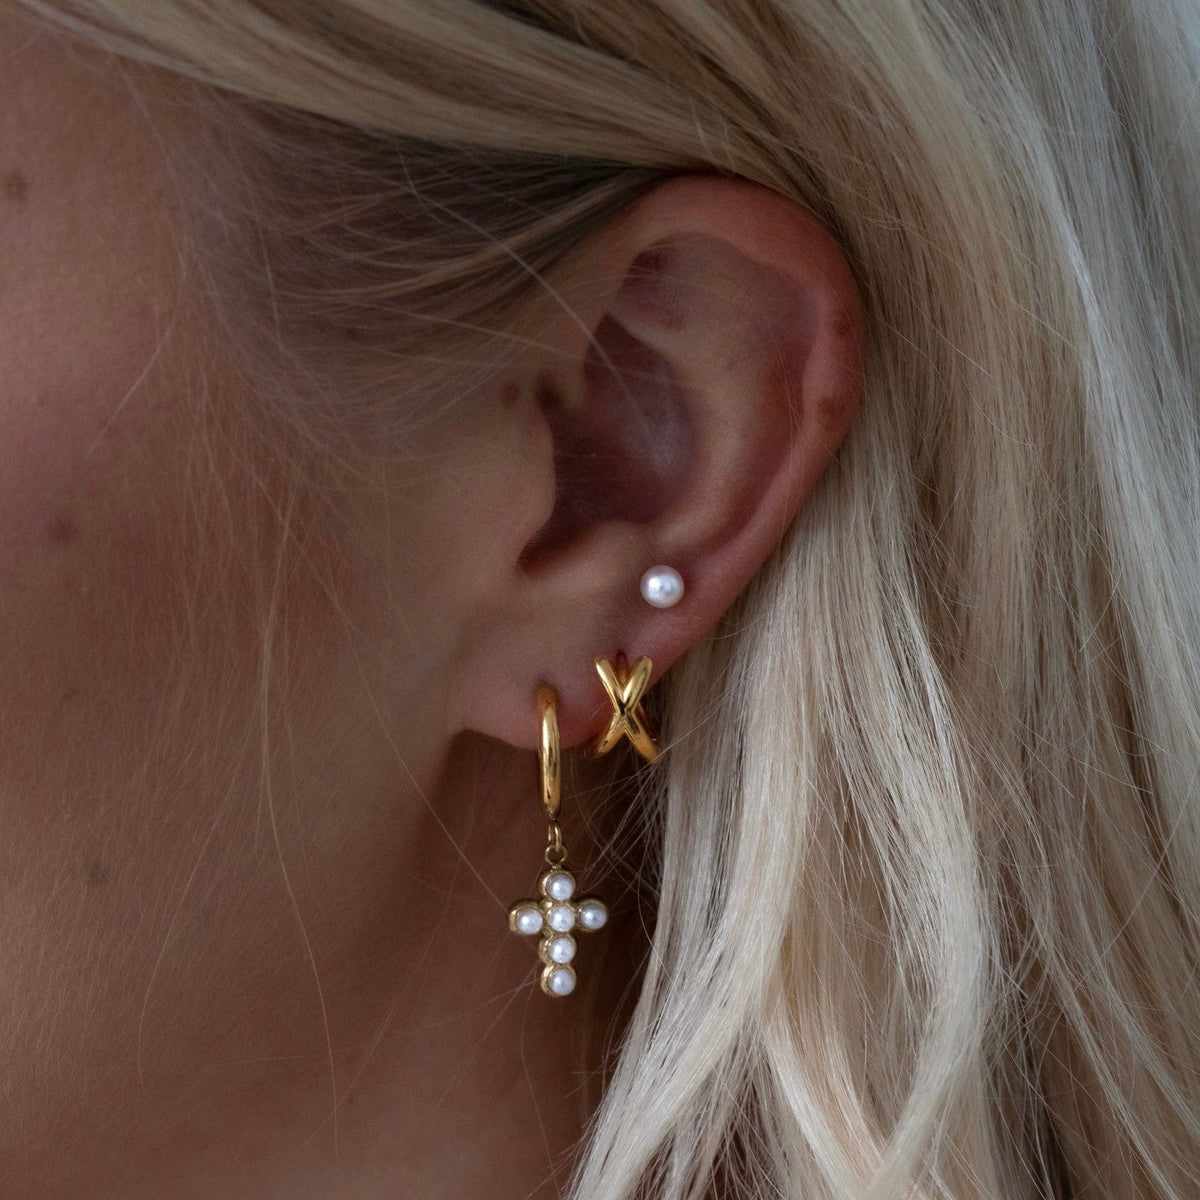 BohoMoon Stainless Steel Seraphina Pearl Hoop Earrings Gold